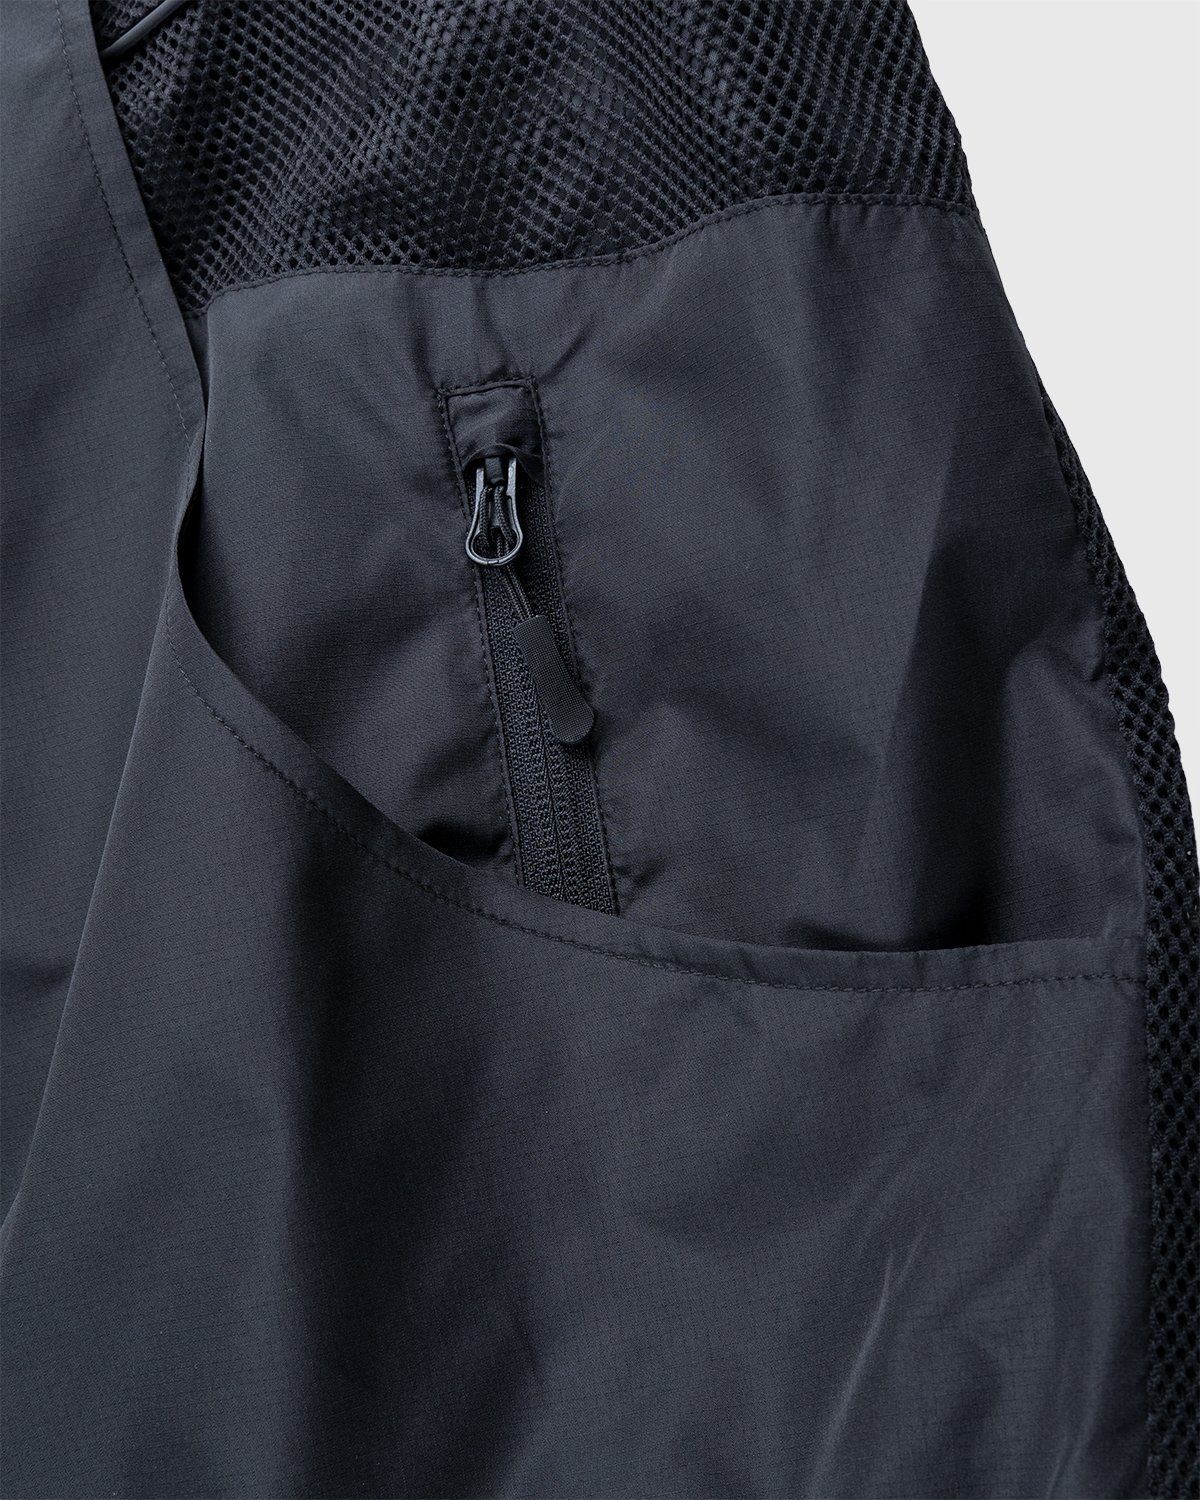 Umbro x Sucux - Zenomorph Jacket Black - Clothing - Black - Image 6